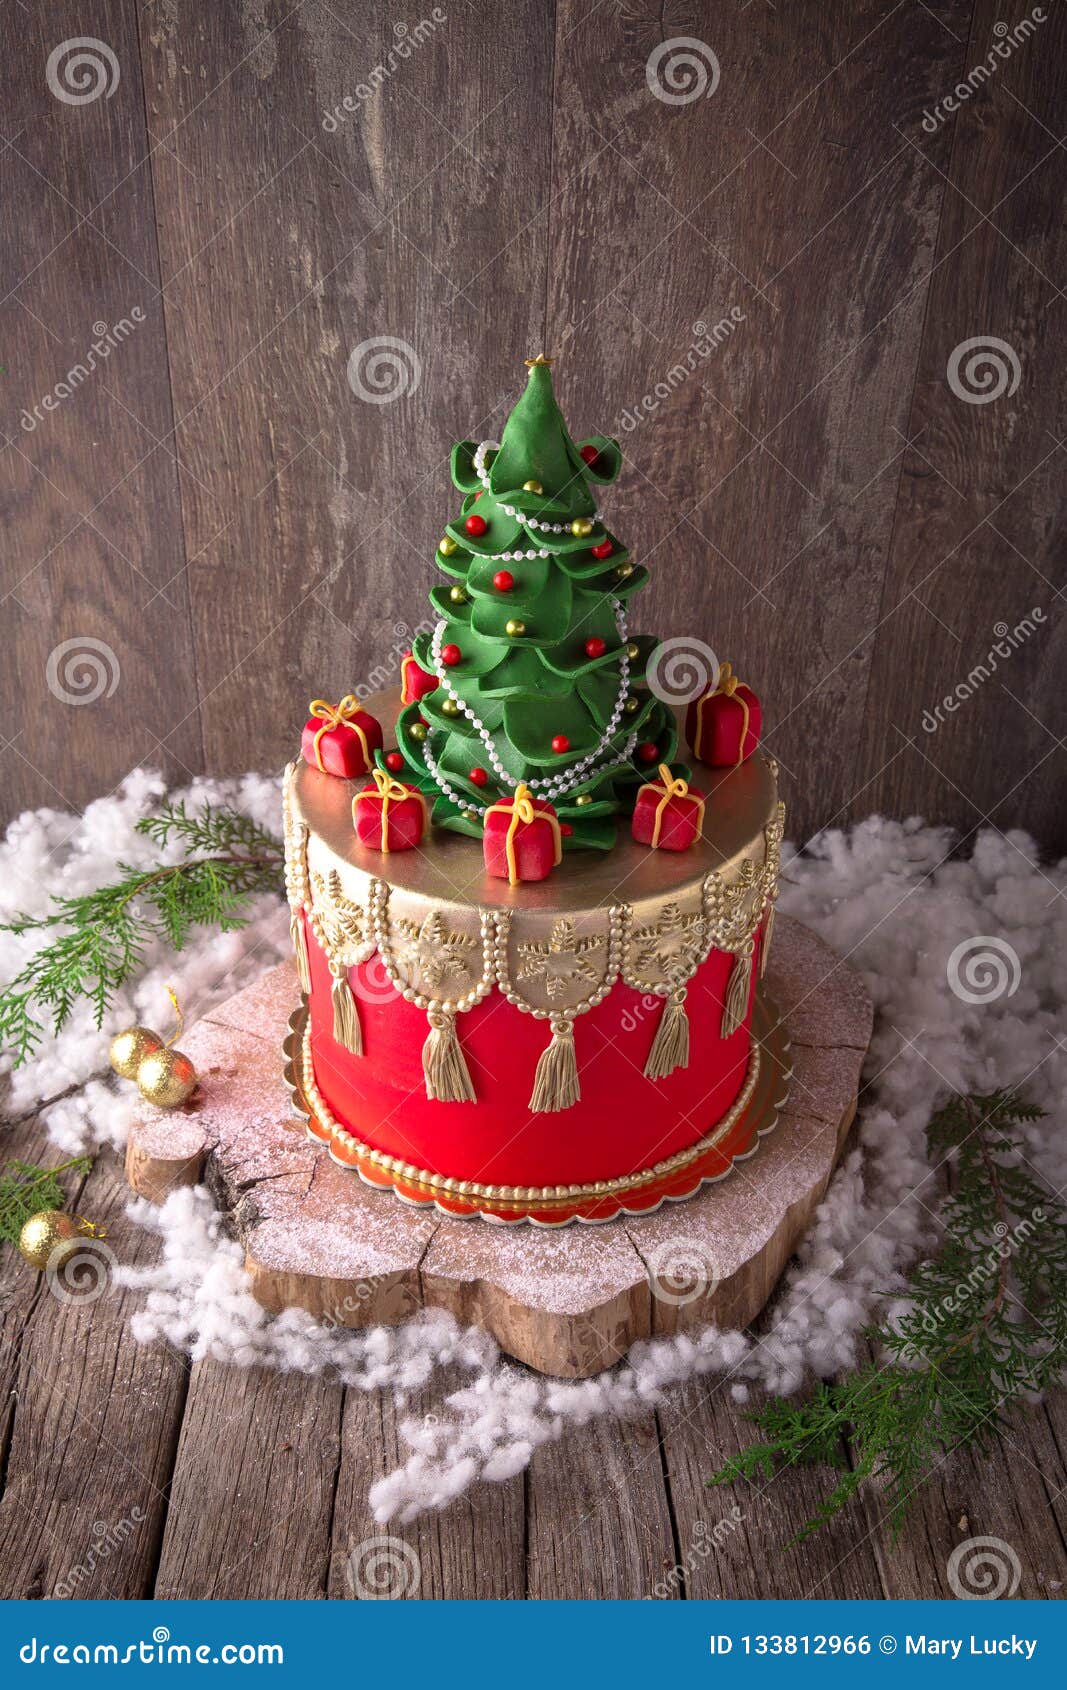 圣诞节最具有代表性的超萌蛋糕——圣诞树根蛋糕